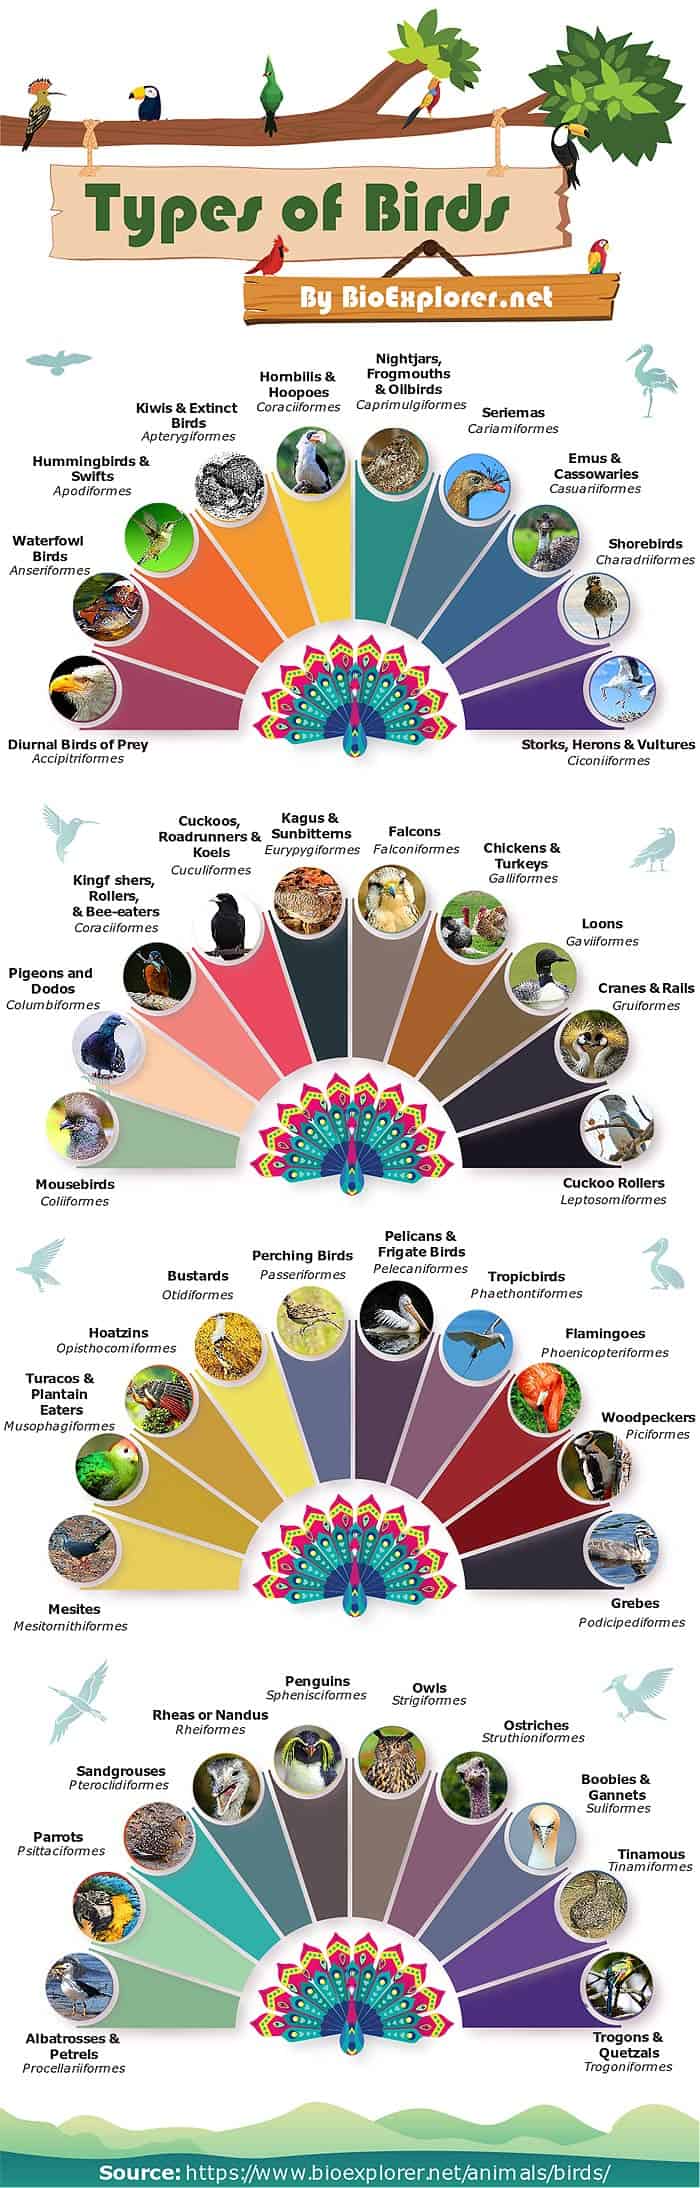 Types Of Birds 40 Different Kinds Of Birds Orders Of Bird Species